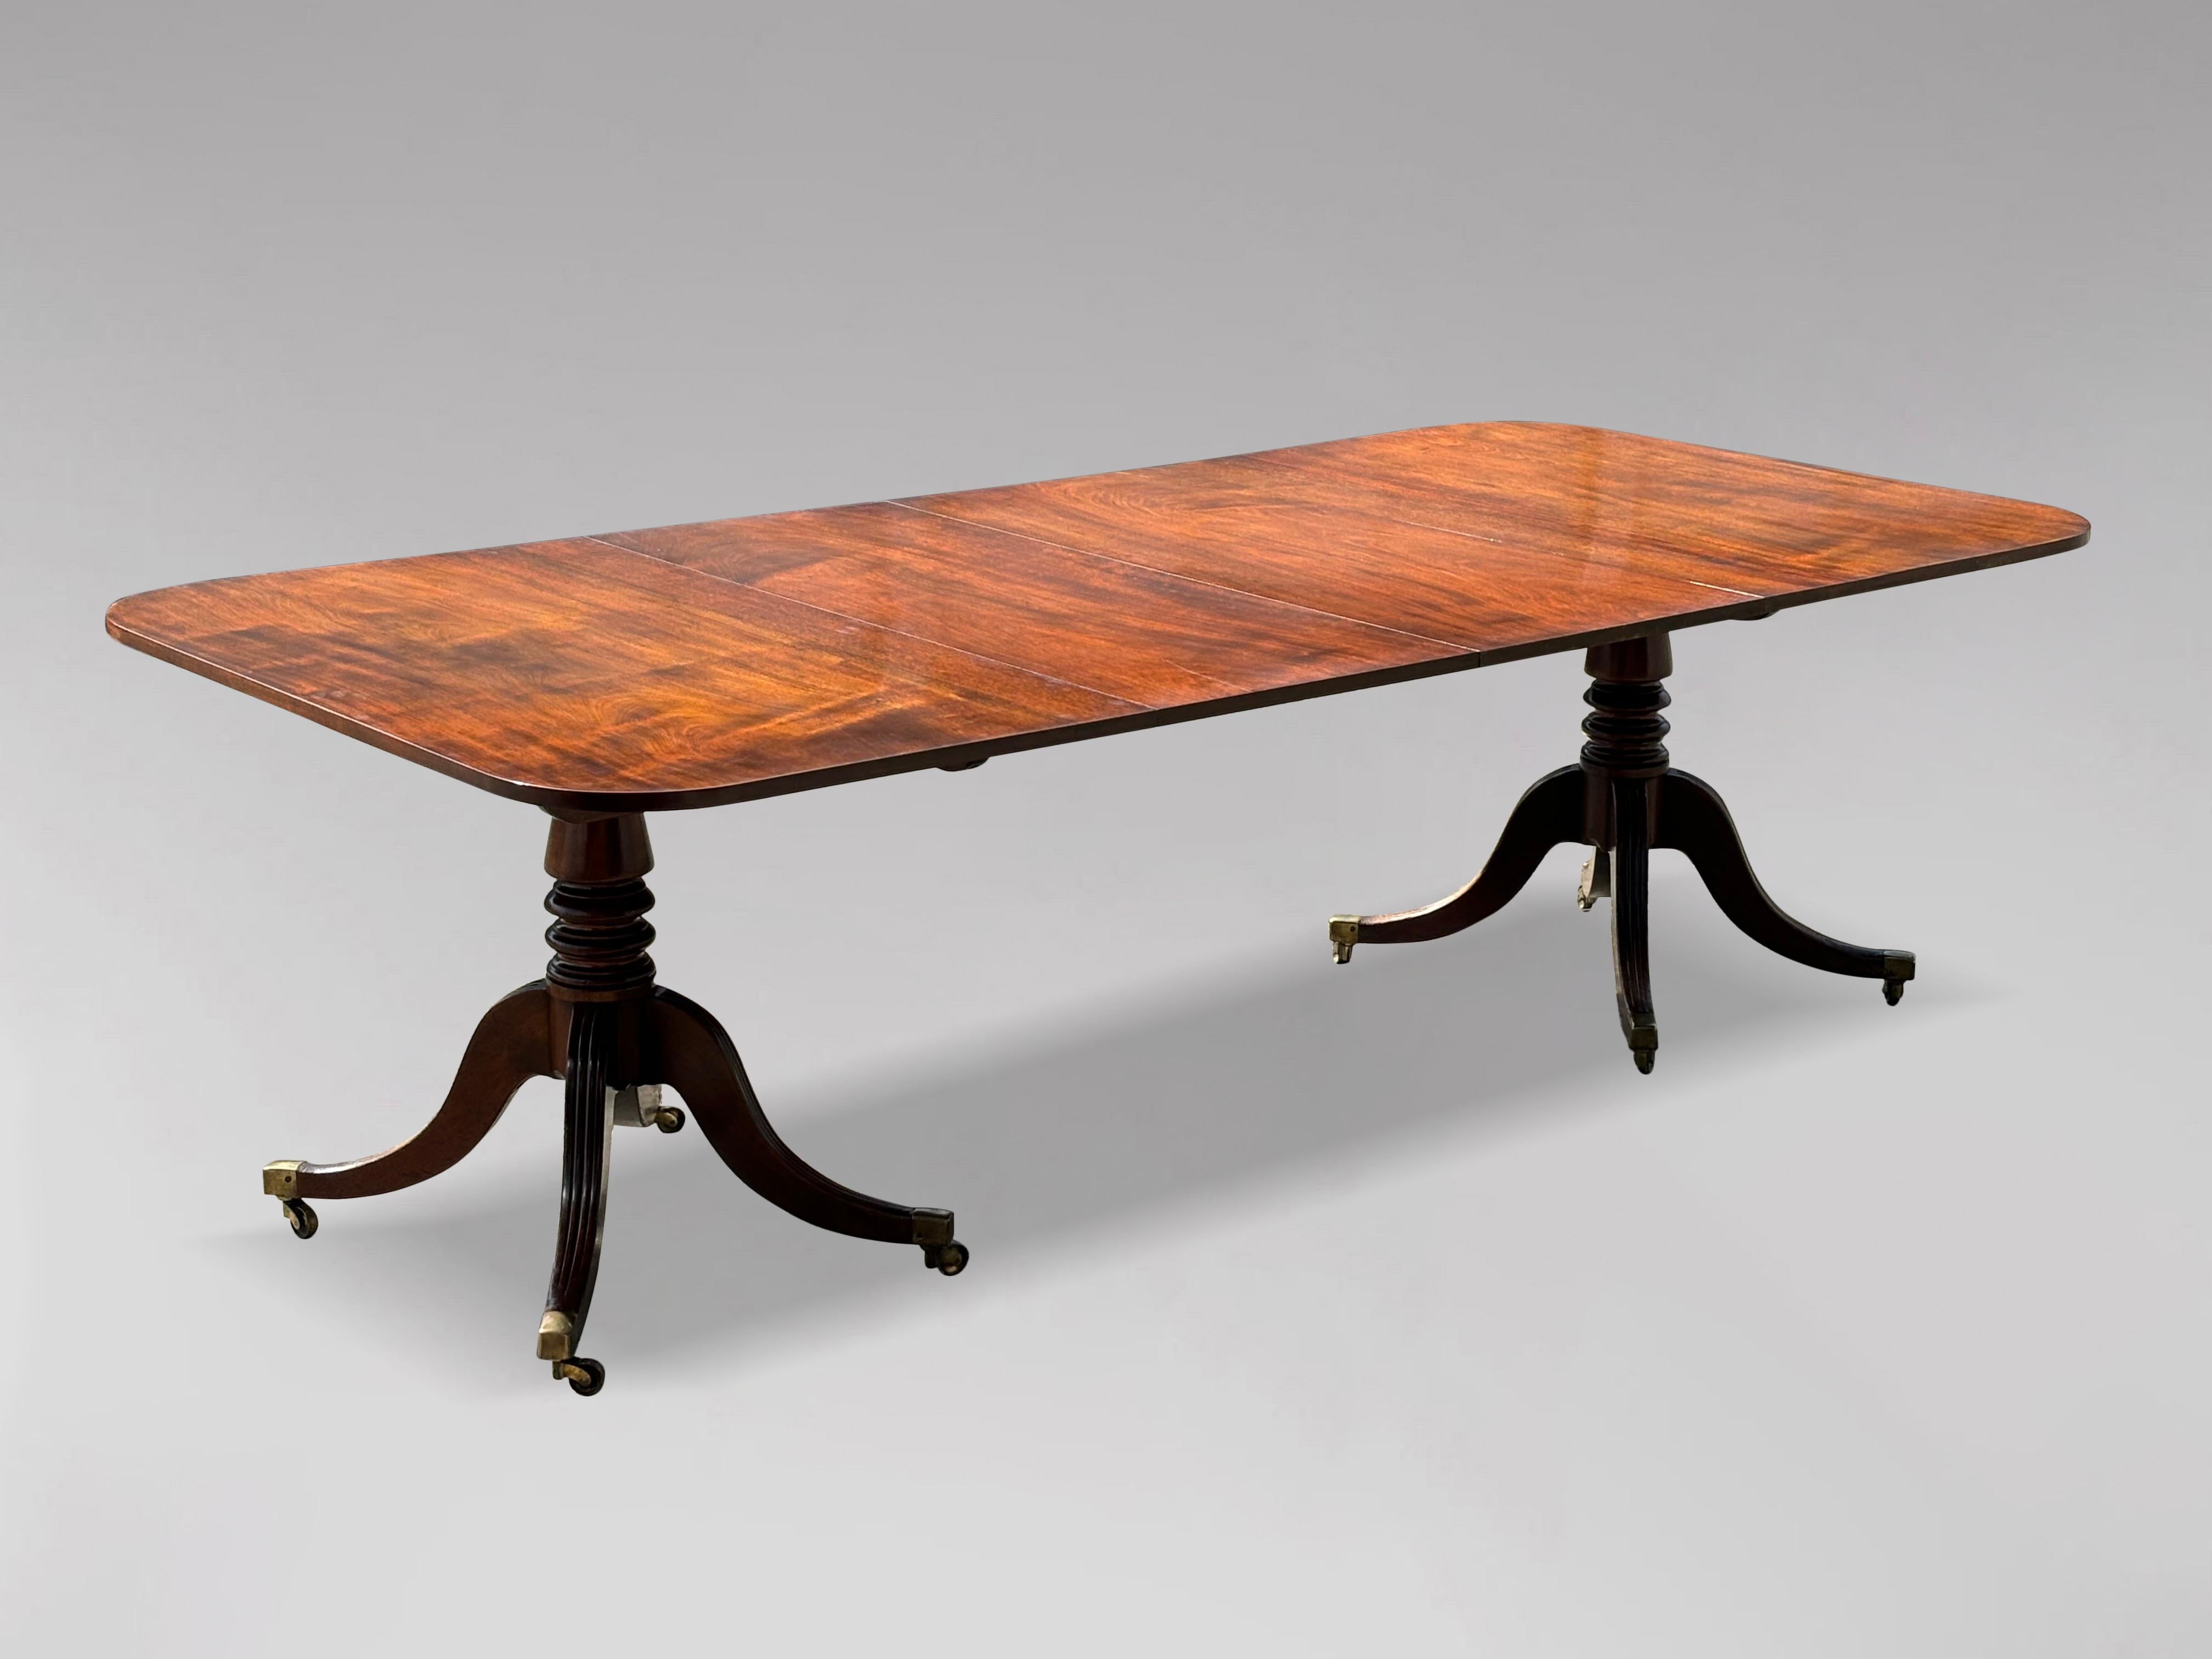 Table de salle à manger à deux pieds en acajou, à plateau rectangulaire solide, de la fin du XVIIIe siècle, d'époque George III. L'acajou cubain massif est d'une qualité et d'une couleur exceptionnelles. Il repose sur une paire de piliers tournés en